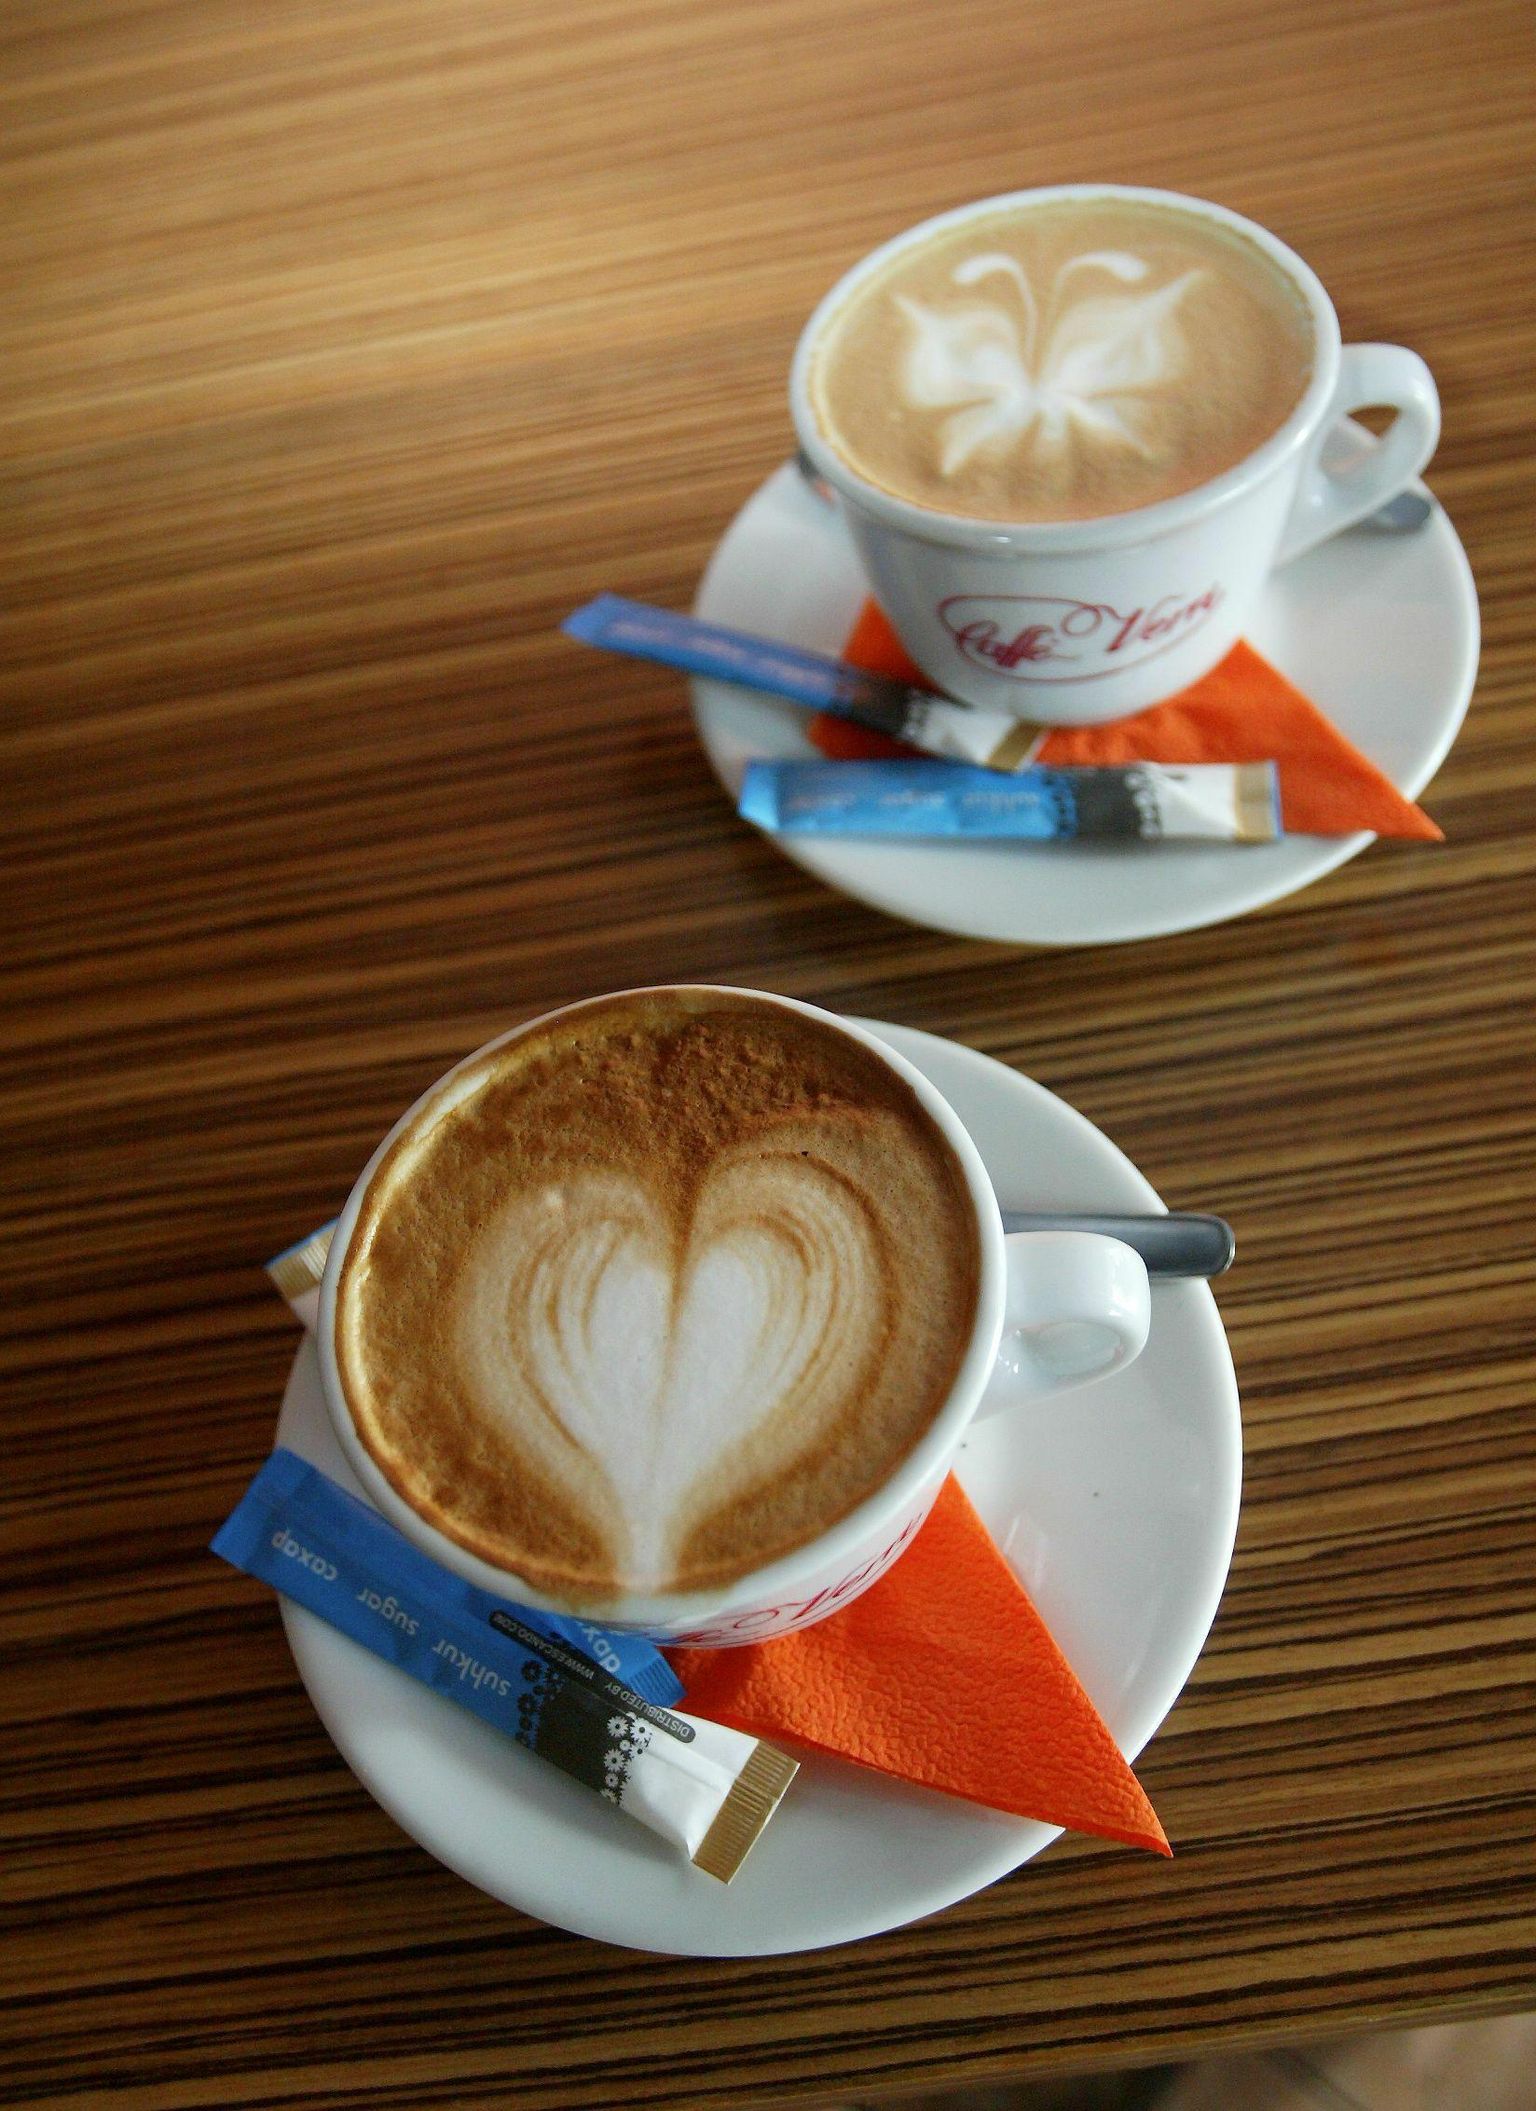 Kaks tassi kohvi – pilt on illustratiivne.